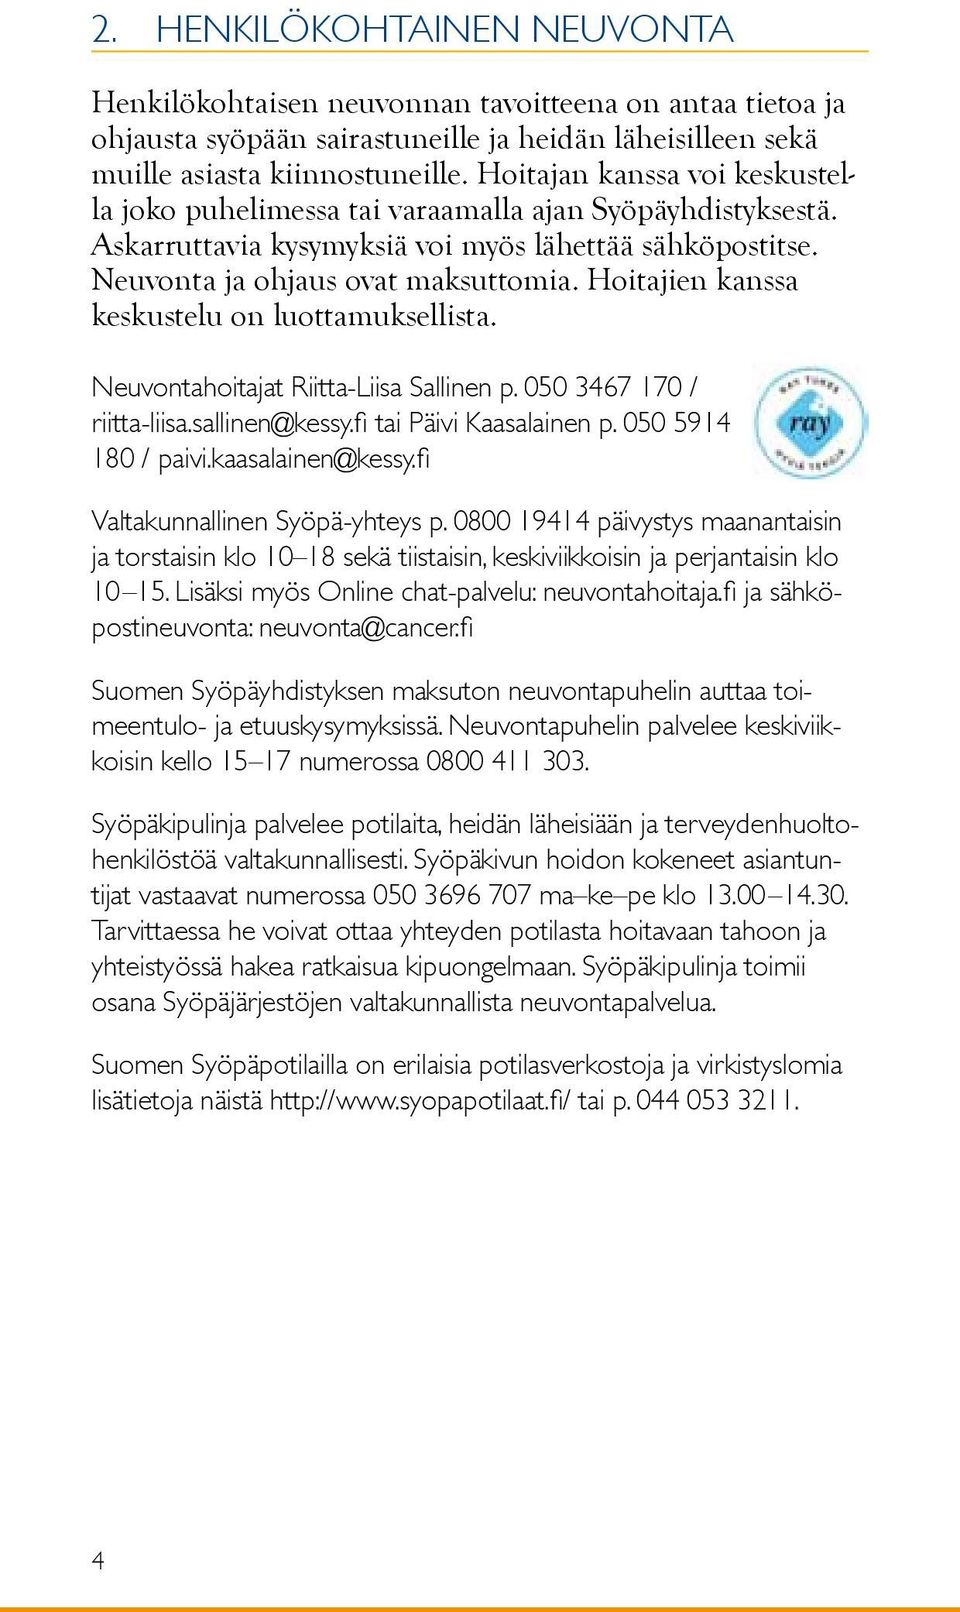 Hoitajien kanssa keskustelu on luottamuksellista. Neuvontahoitajat Riitta-Liisa Sallinen p. 050 3467 170 / riitta-liisa.sallinen@kessy.fi tai Päivi Kaasalainen p. 050 5914 180 / paivi.